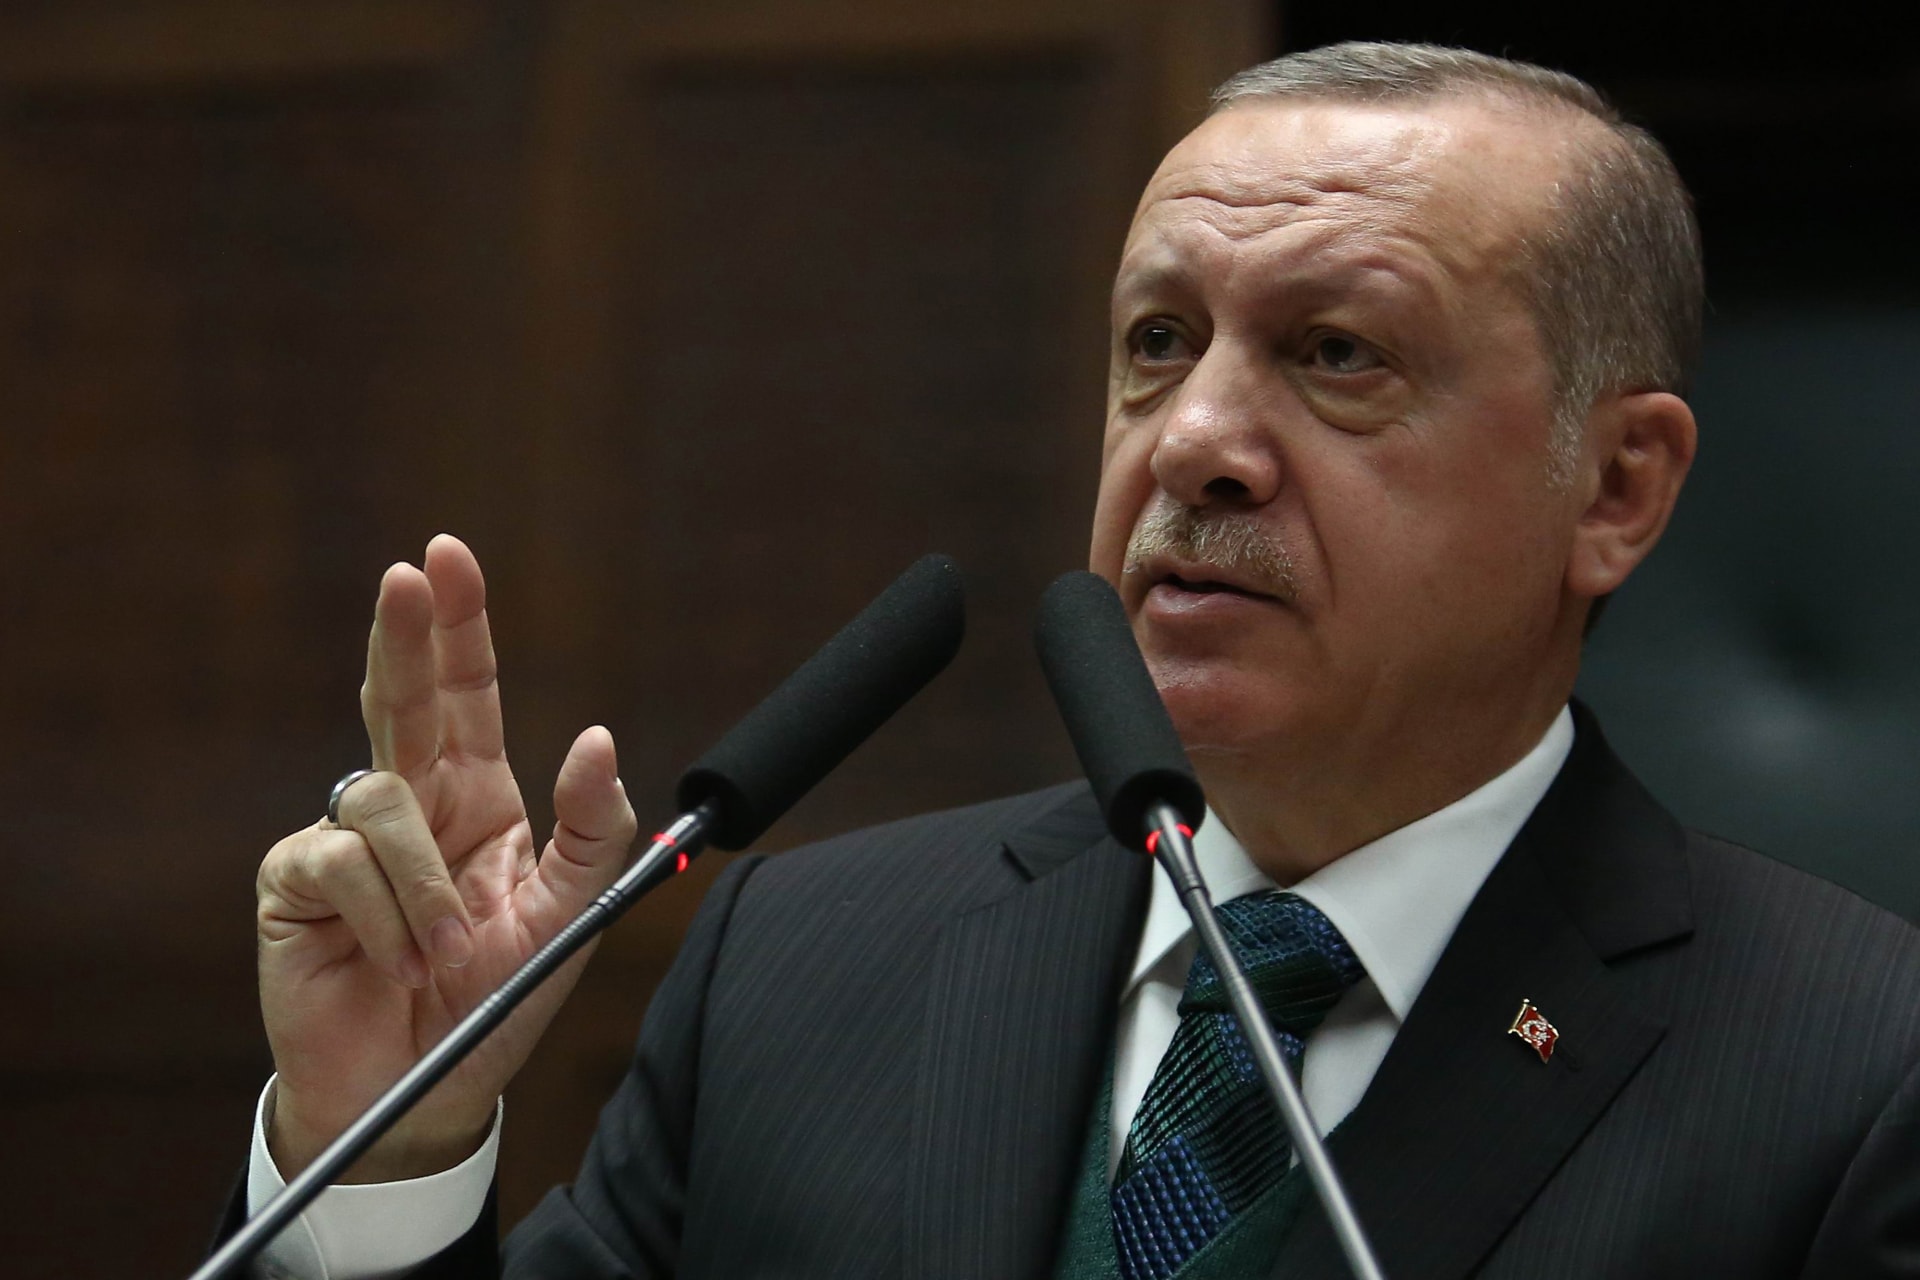 أردوغان يصف عقلية الإدارة الأمريكية بـ"الإنجيلية الصهيونية"